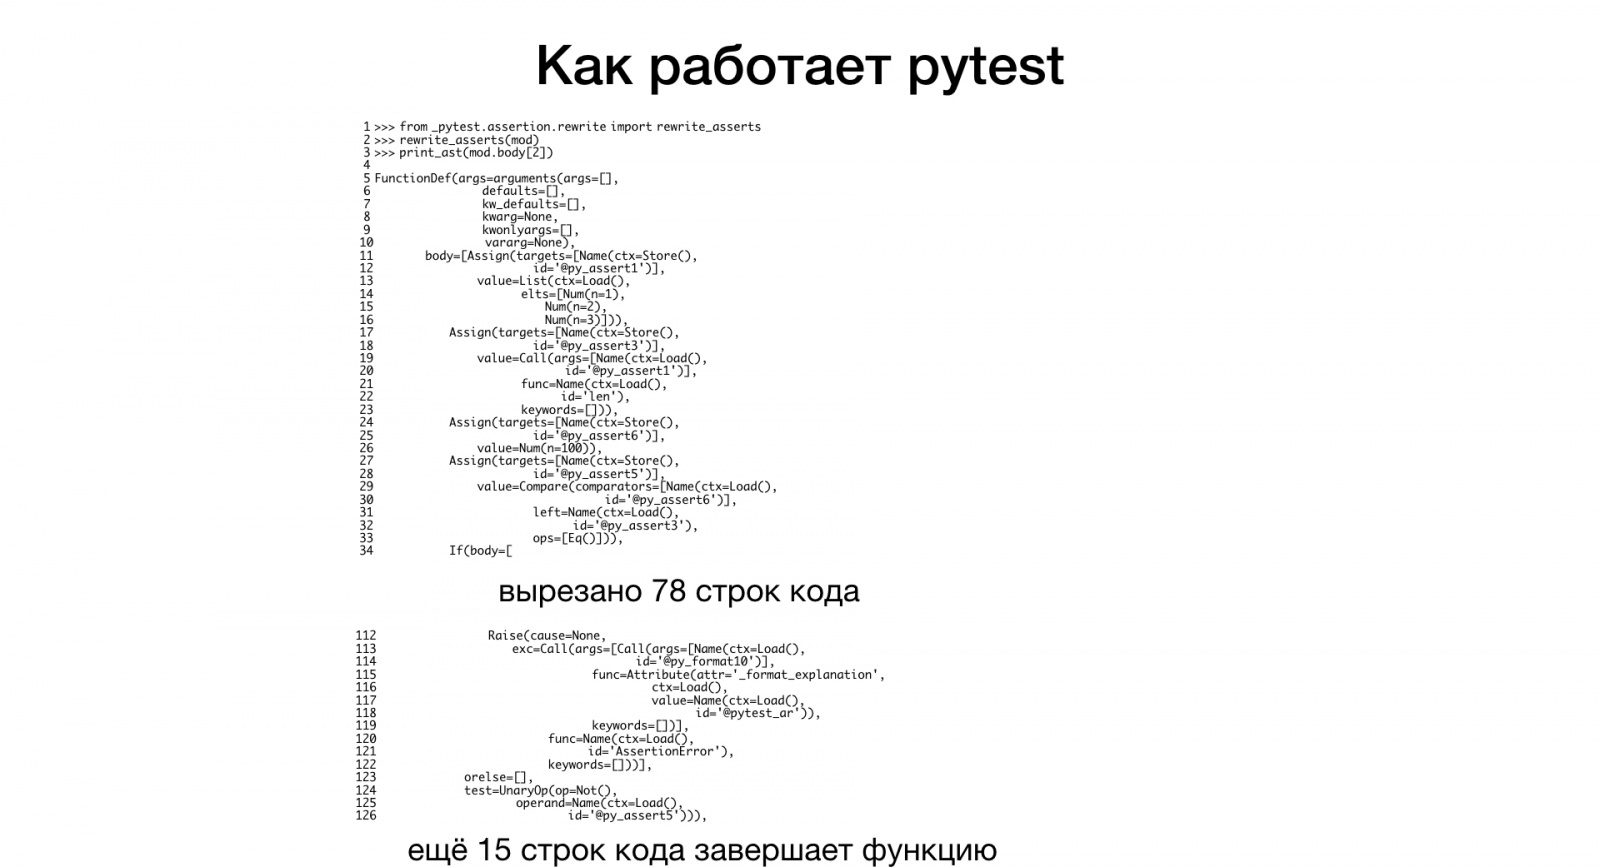 Макросы для питониста. Доклад Яндекса - 6